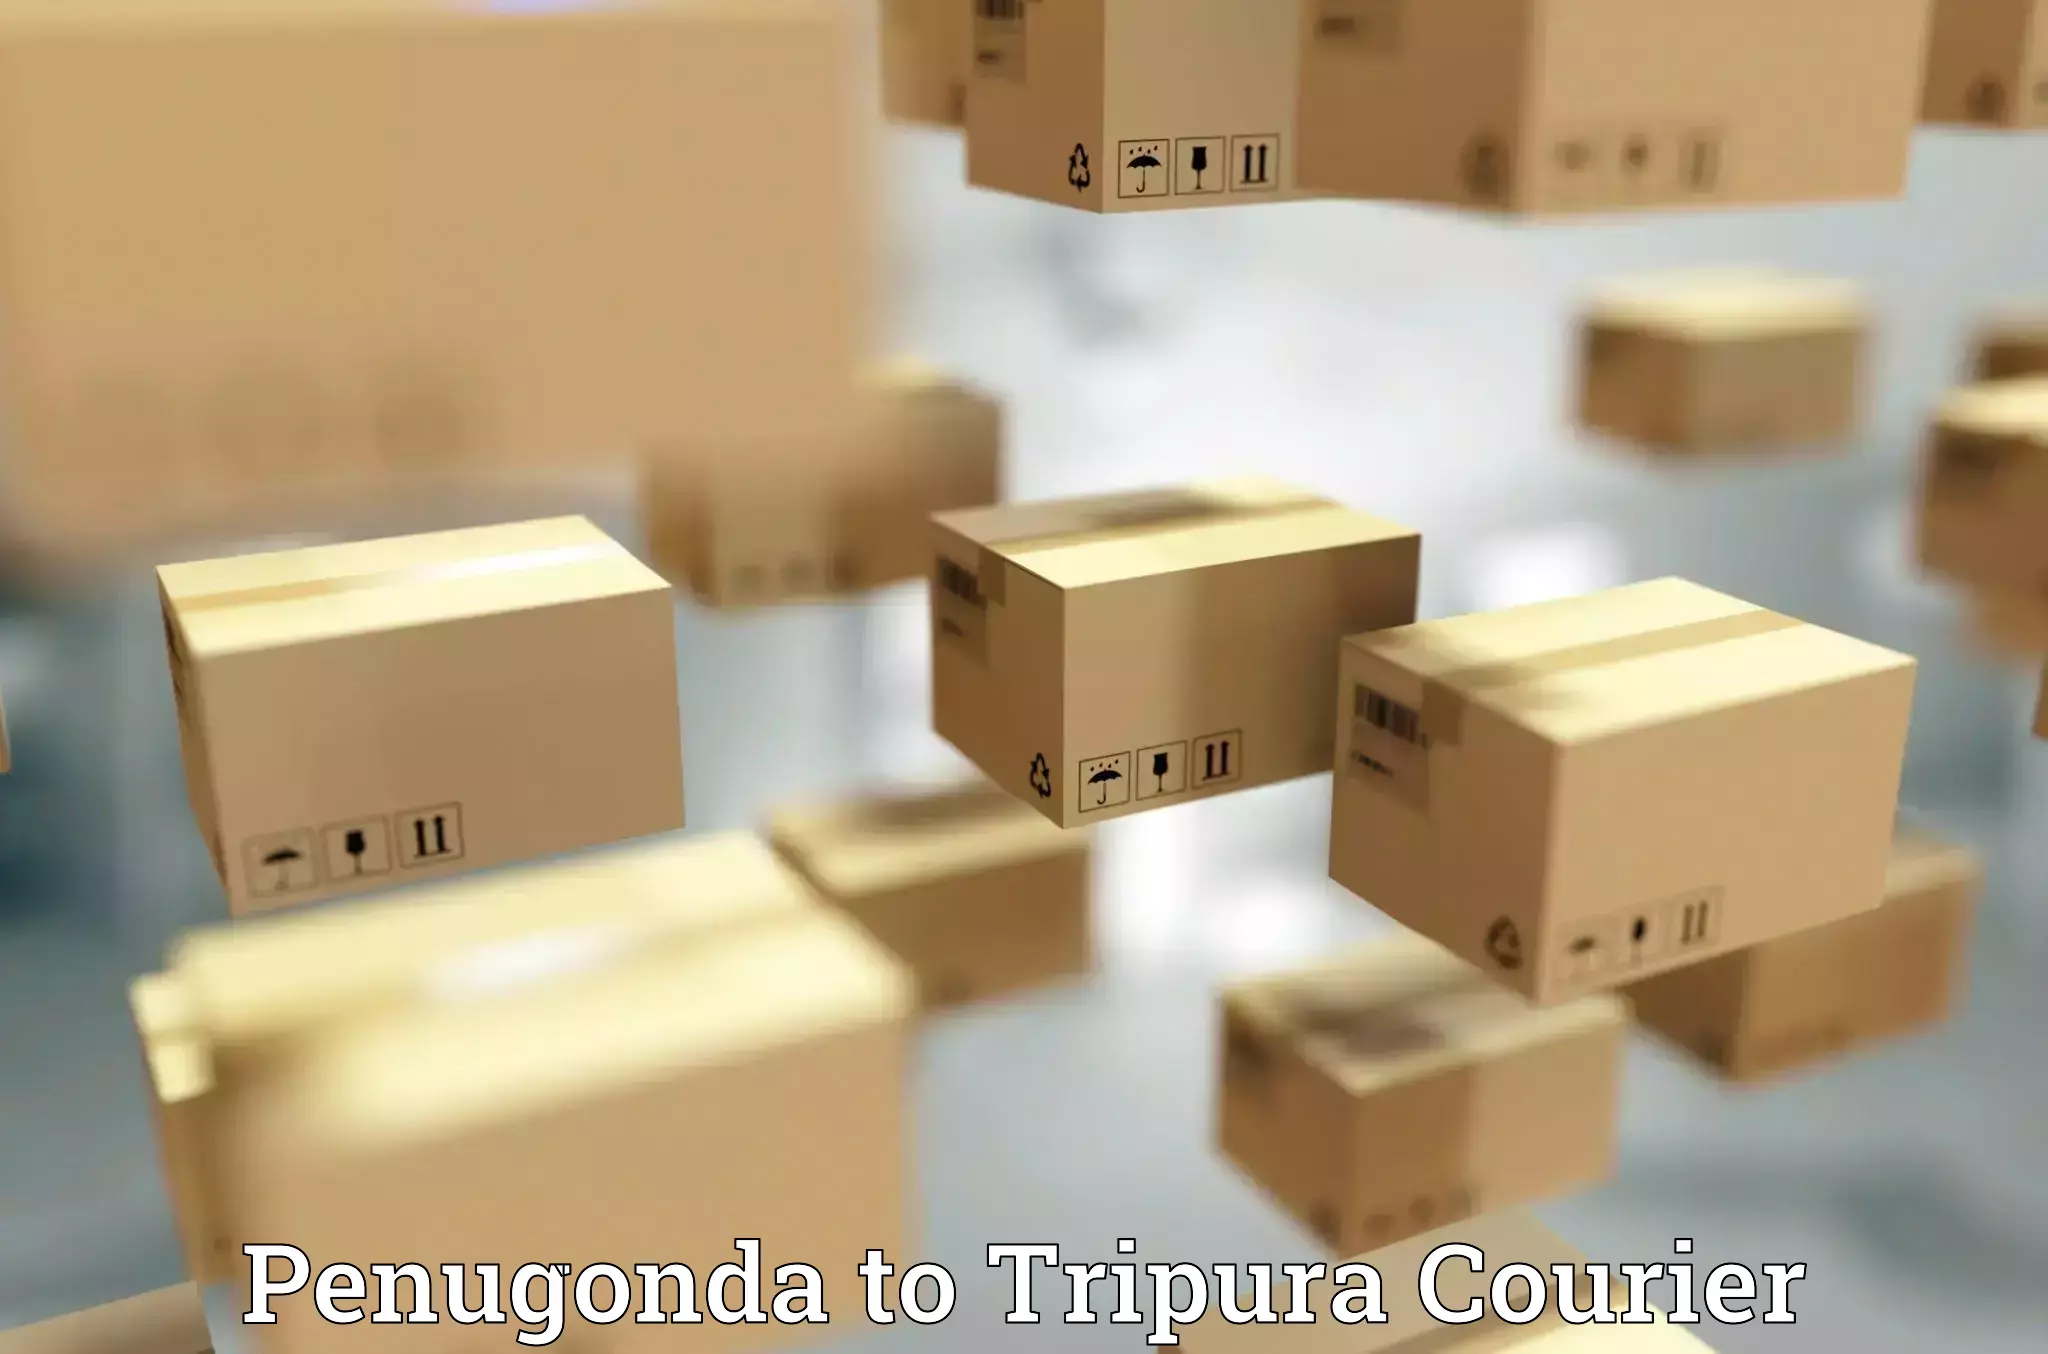 Cost-effective courier options Penugonda to IIIT Agartala